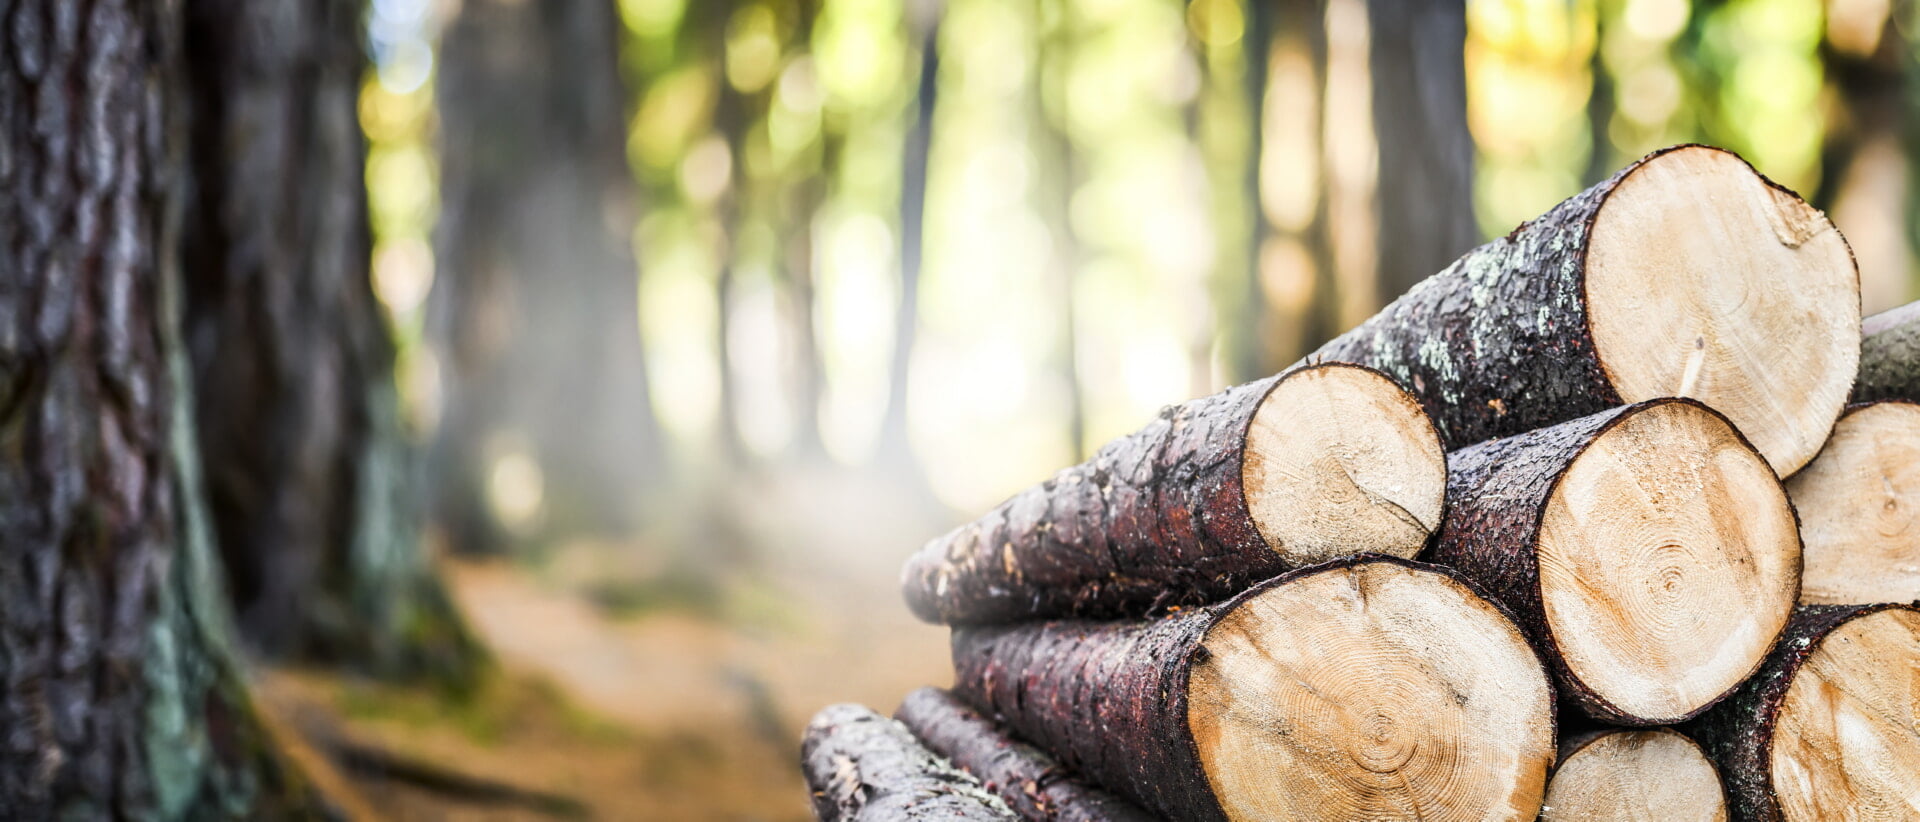 Holz Baumstämme Forstflächen kaufen verkaufen